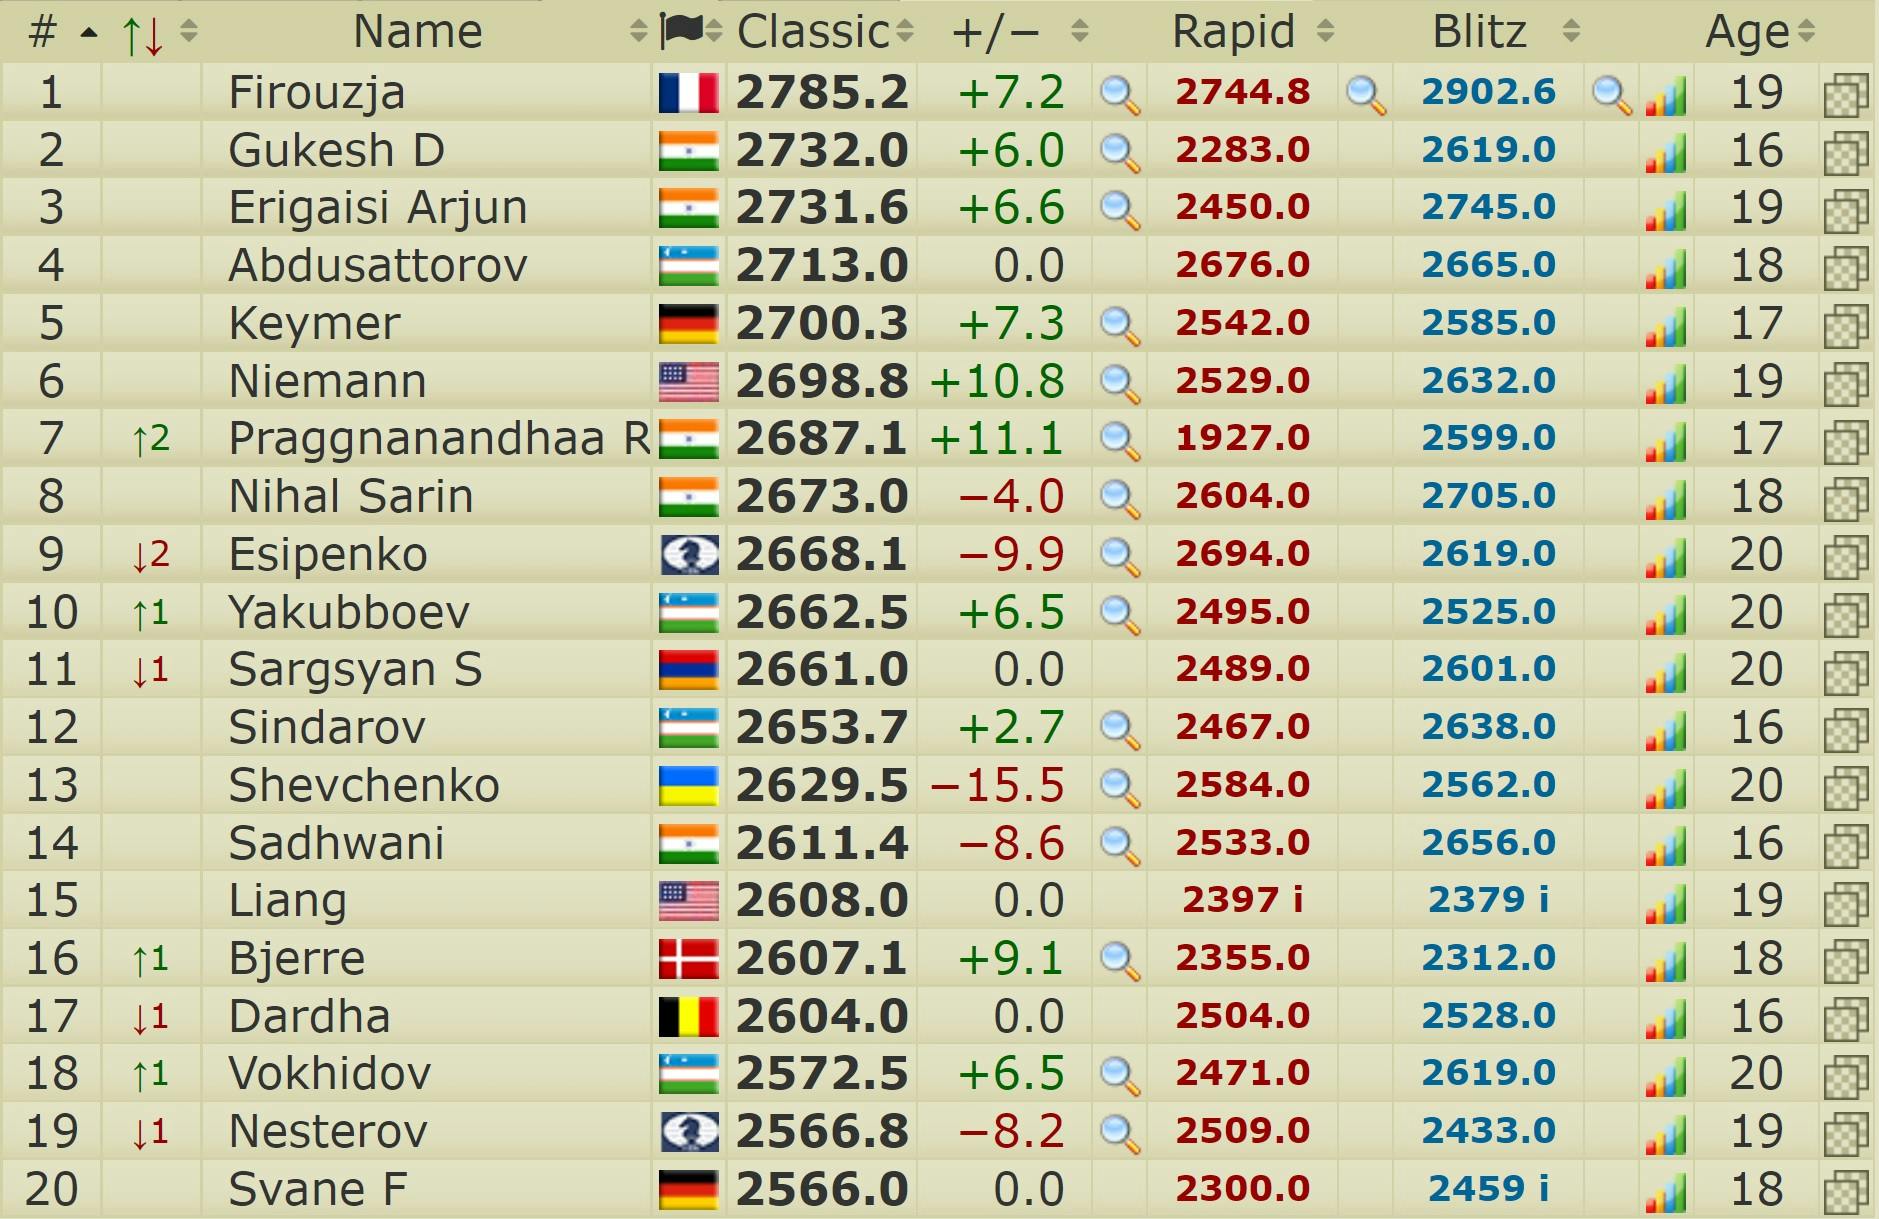 Blitz Chess Ratings 